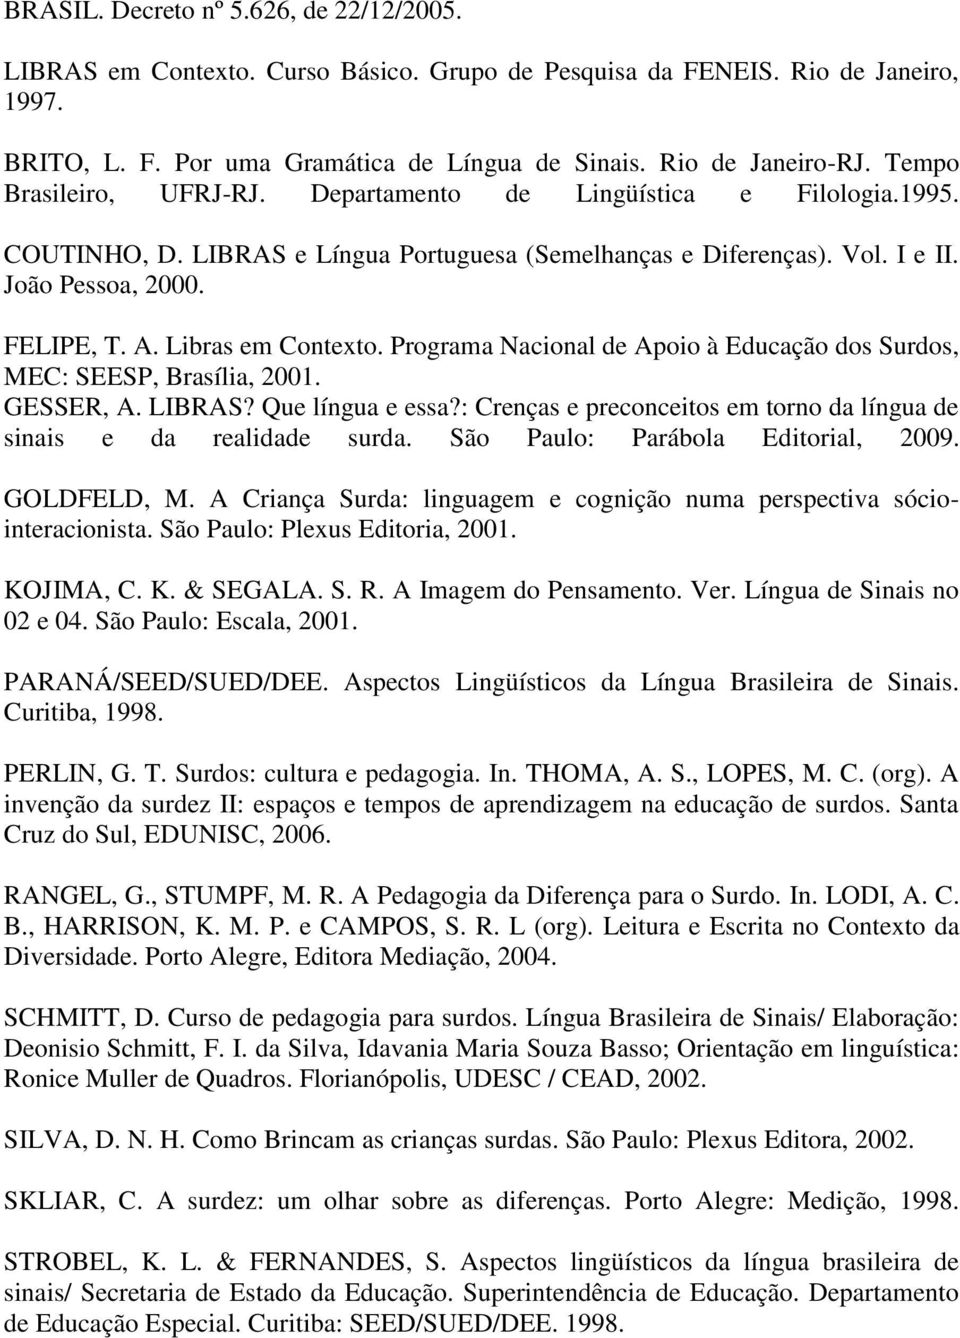 Libras em Contexto. Programa Nacional de Apoio à Educação dos Surdos, MEC: SEESP, Brasília, 2001. GESSER, A. LIBRAS? Que língua e essa?